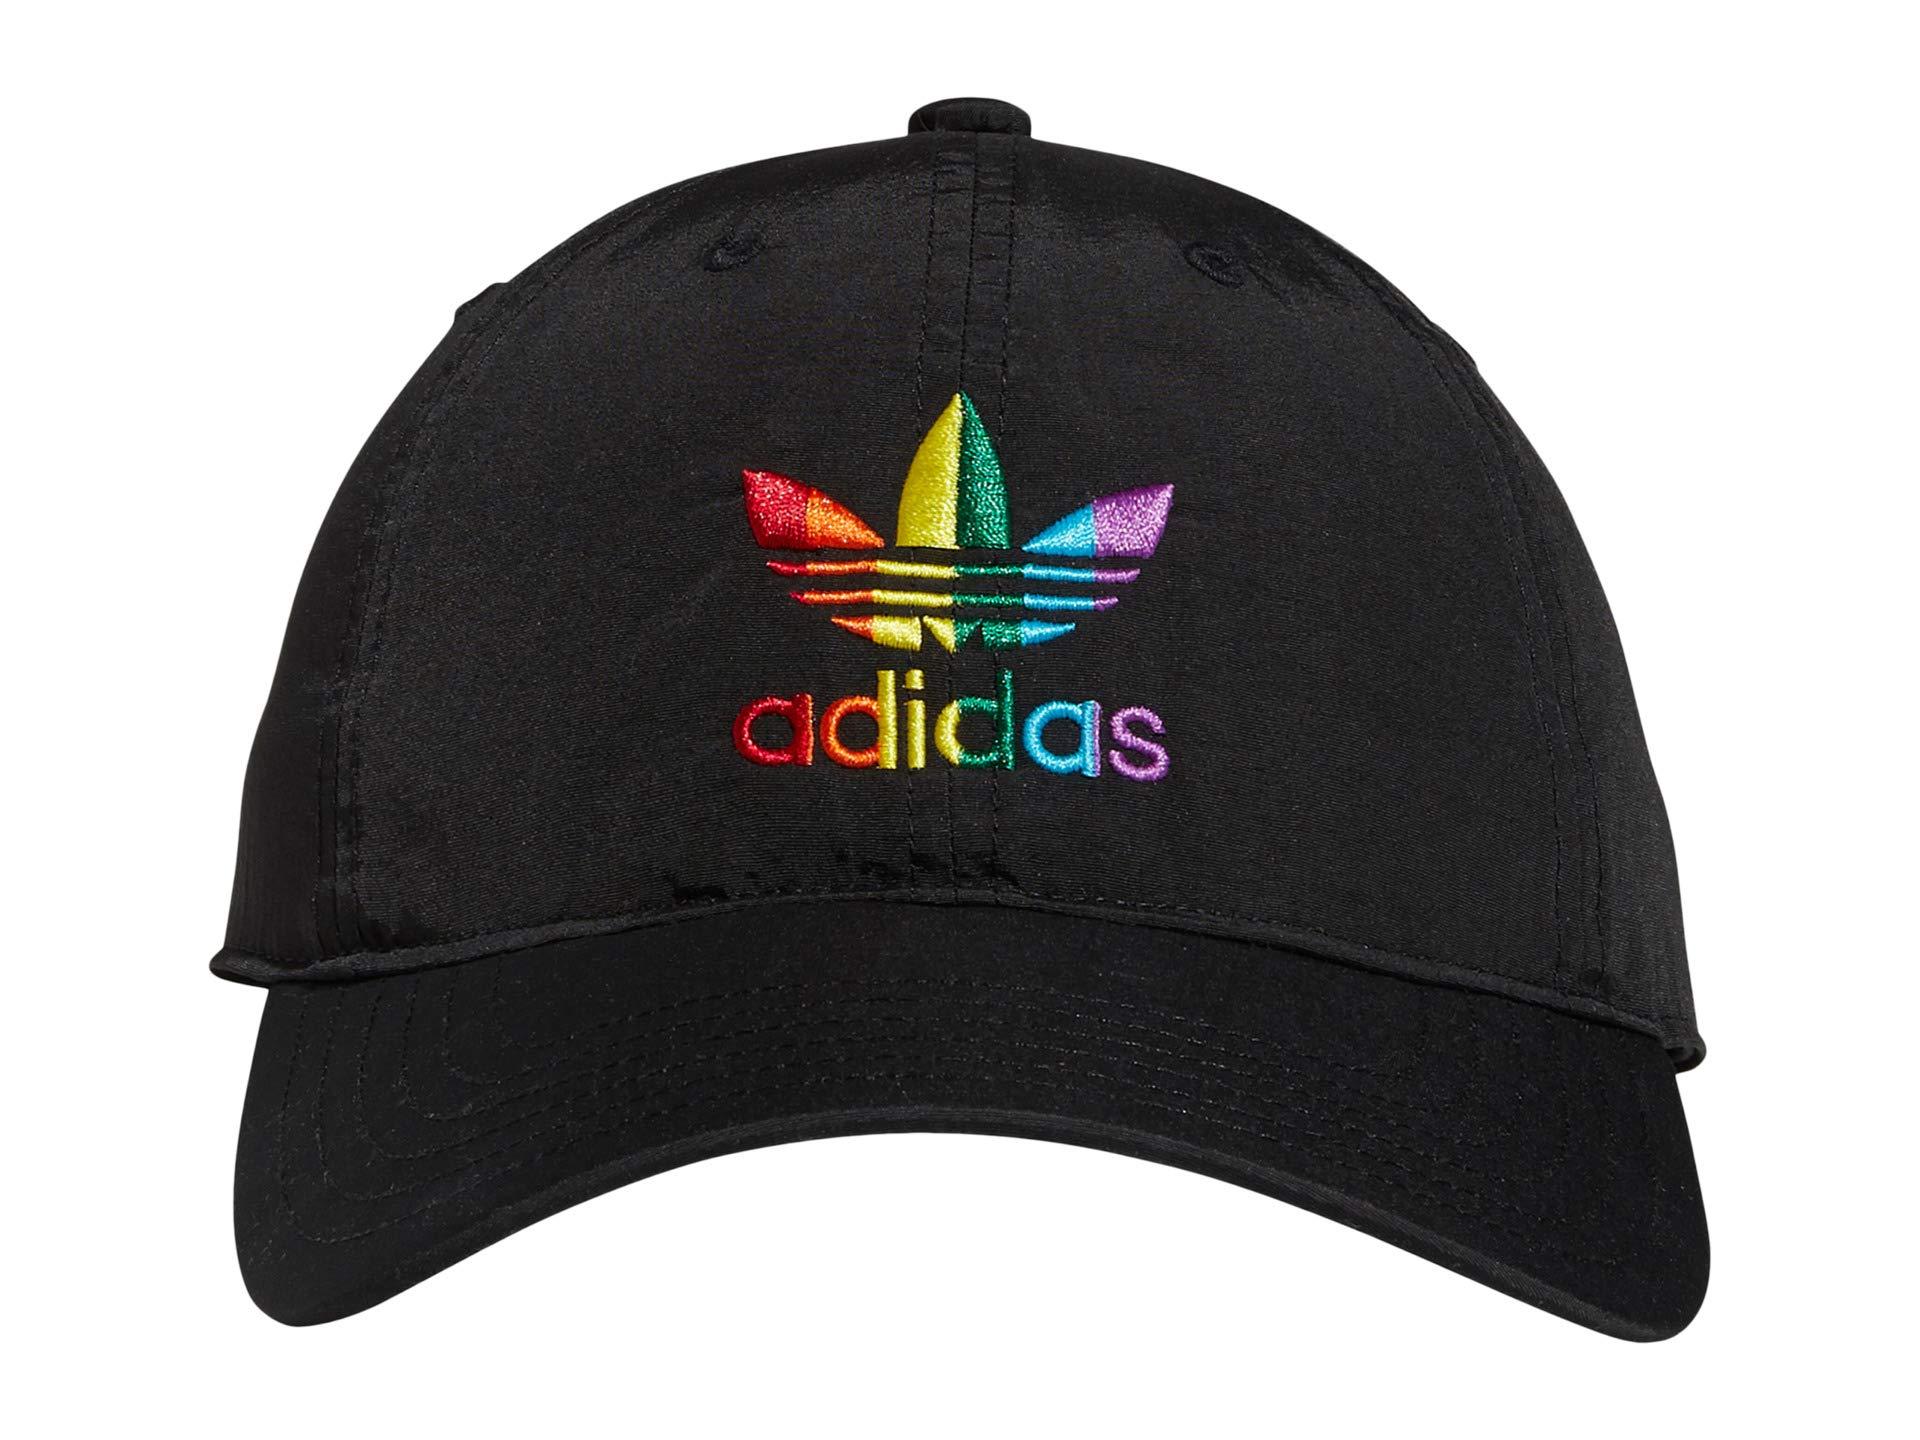 stapel Voor een dagje uit Laan adidas Originals Relaxed Pride Cap Caps in Black | Lyst